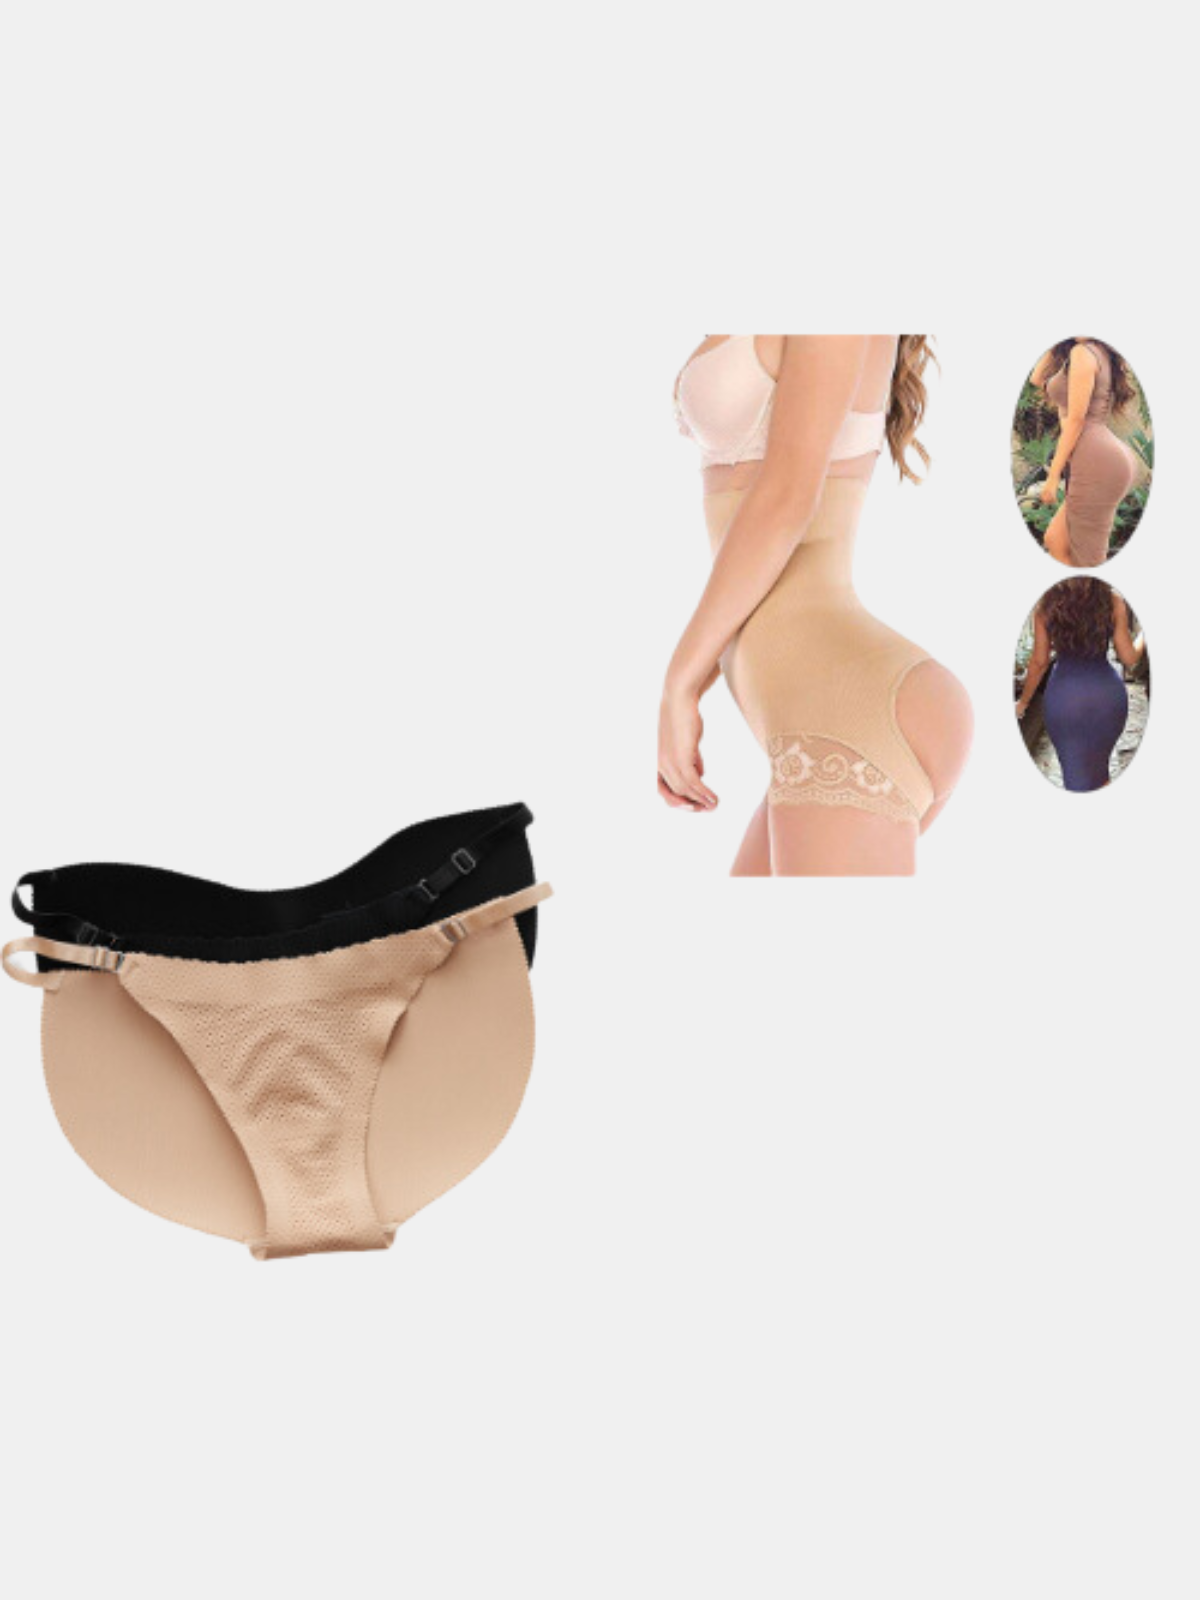 Padded Hips Women Butt Hip Enhancer Shaper - Max Shapewear